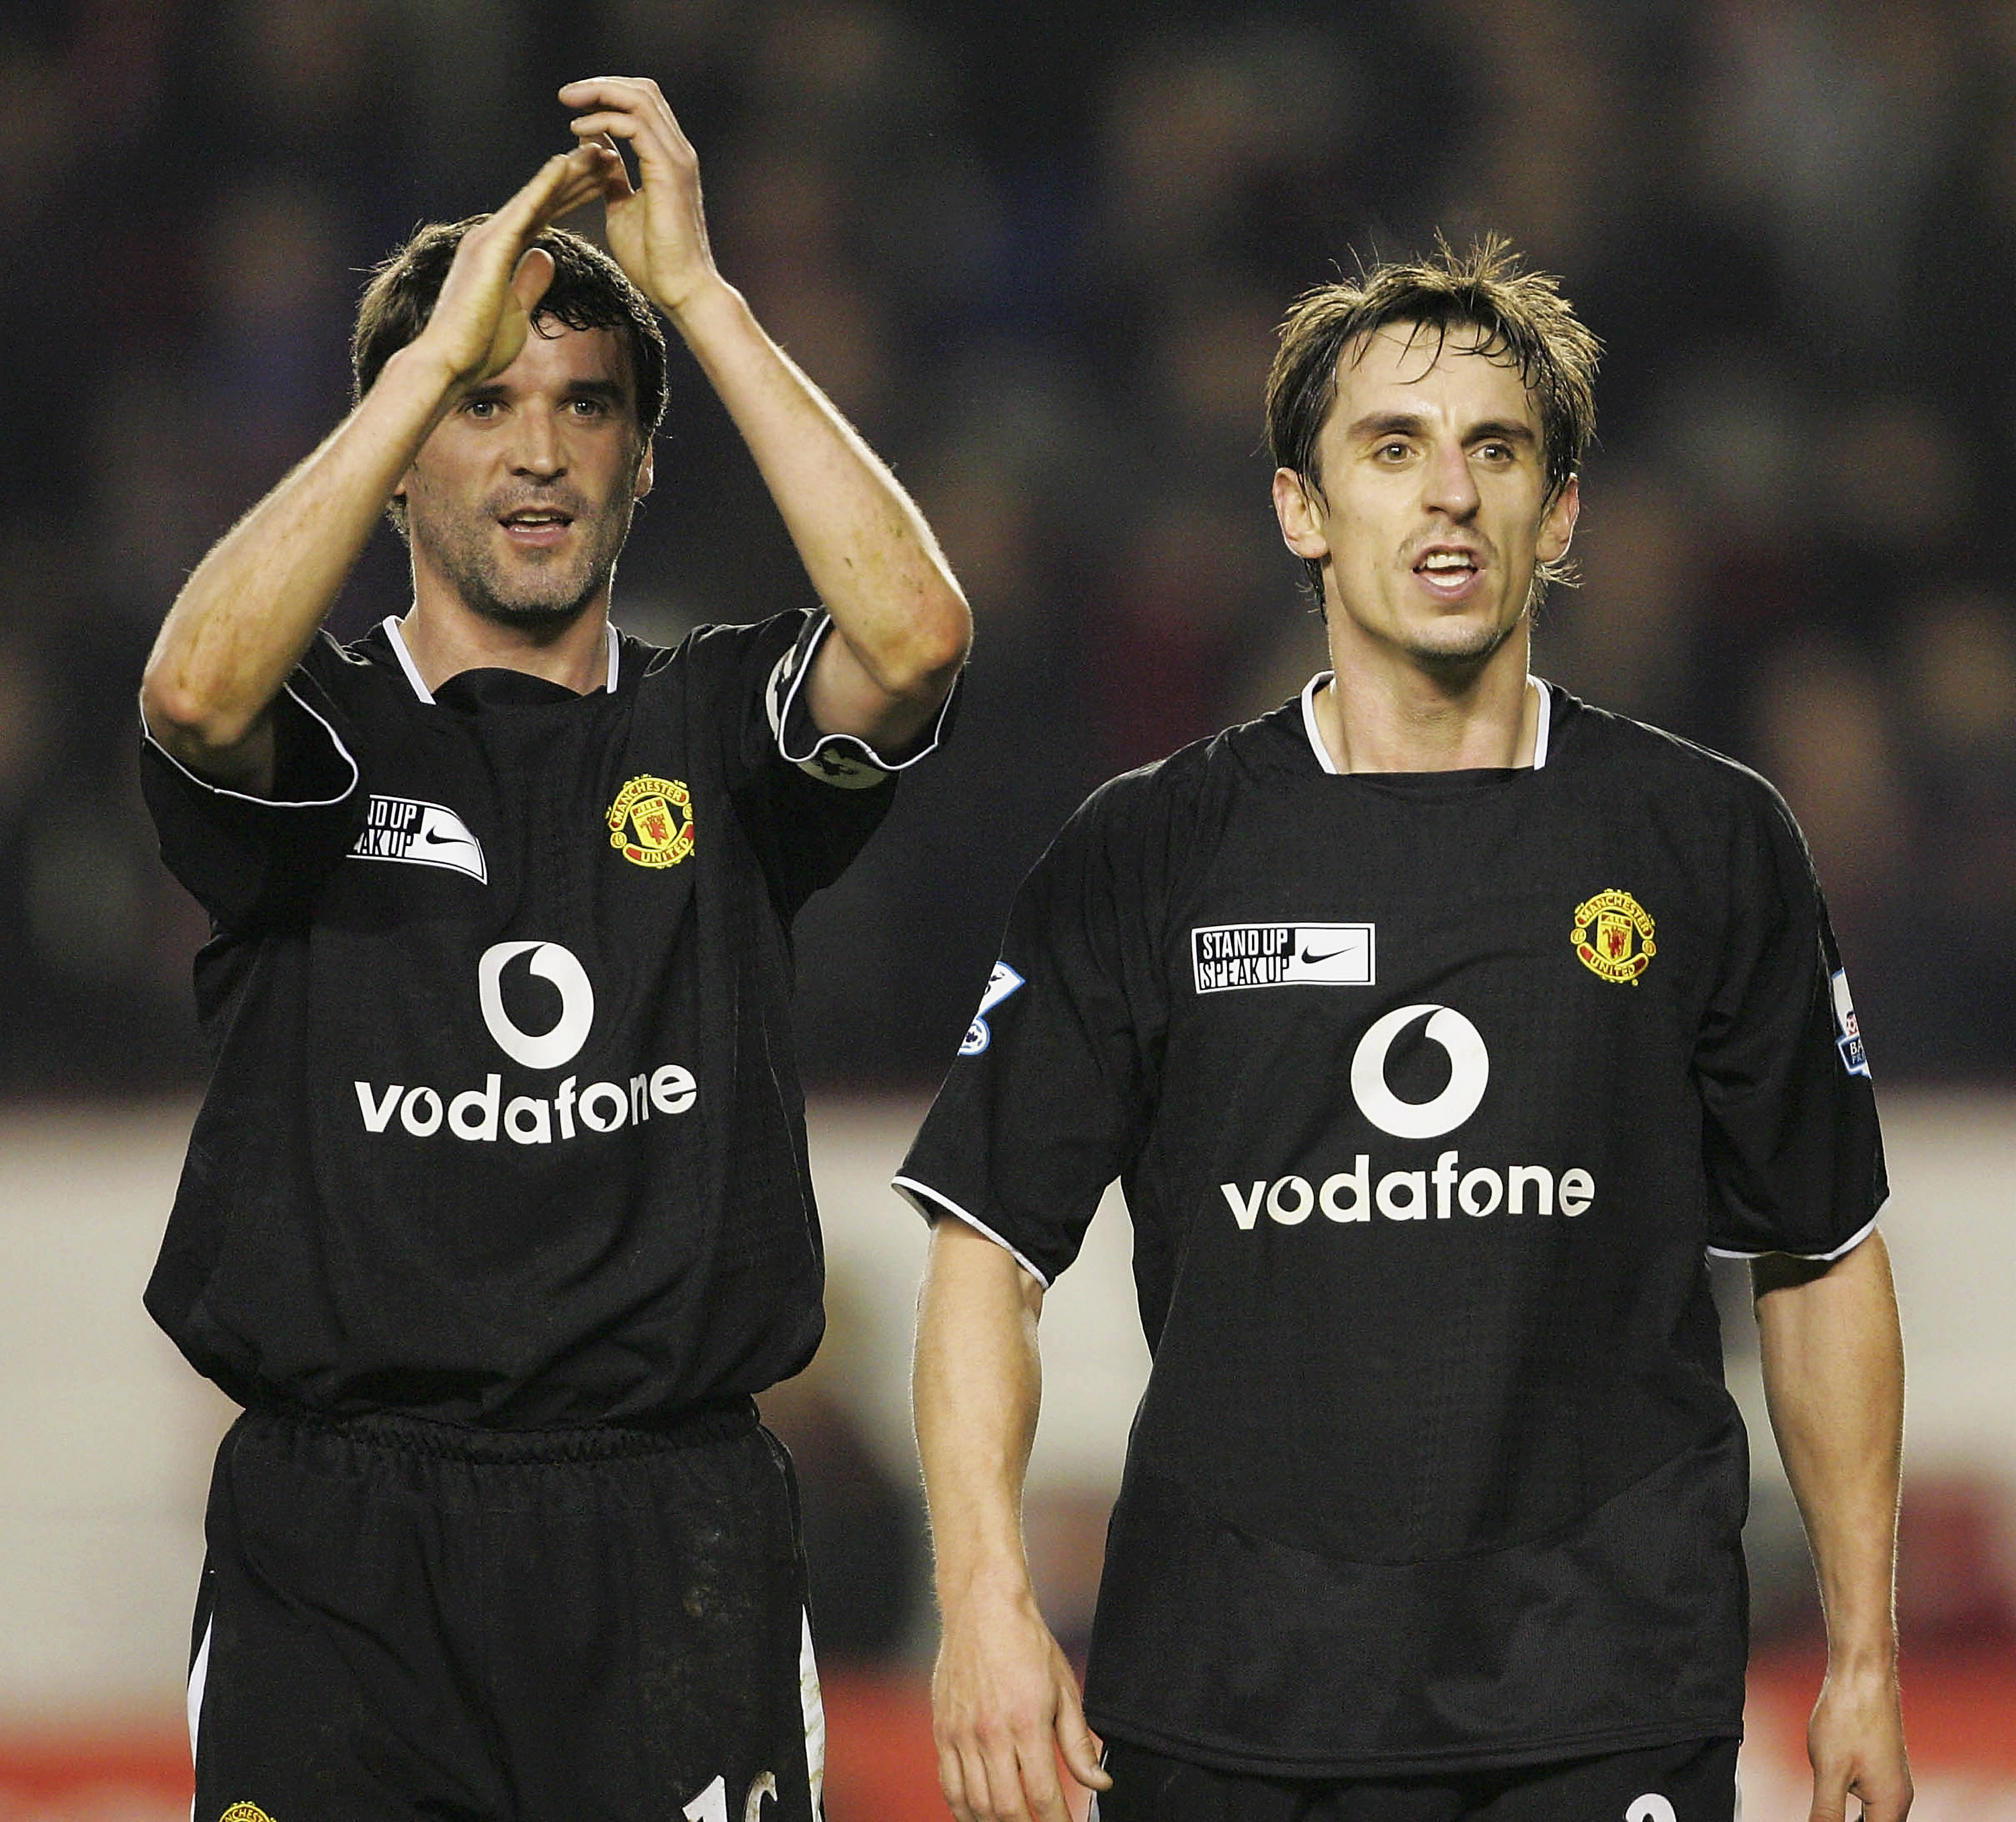 Neville starred for Man Utd alongside Roy Keane